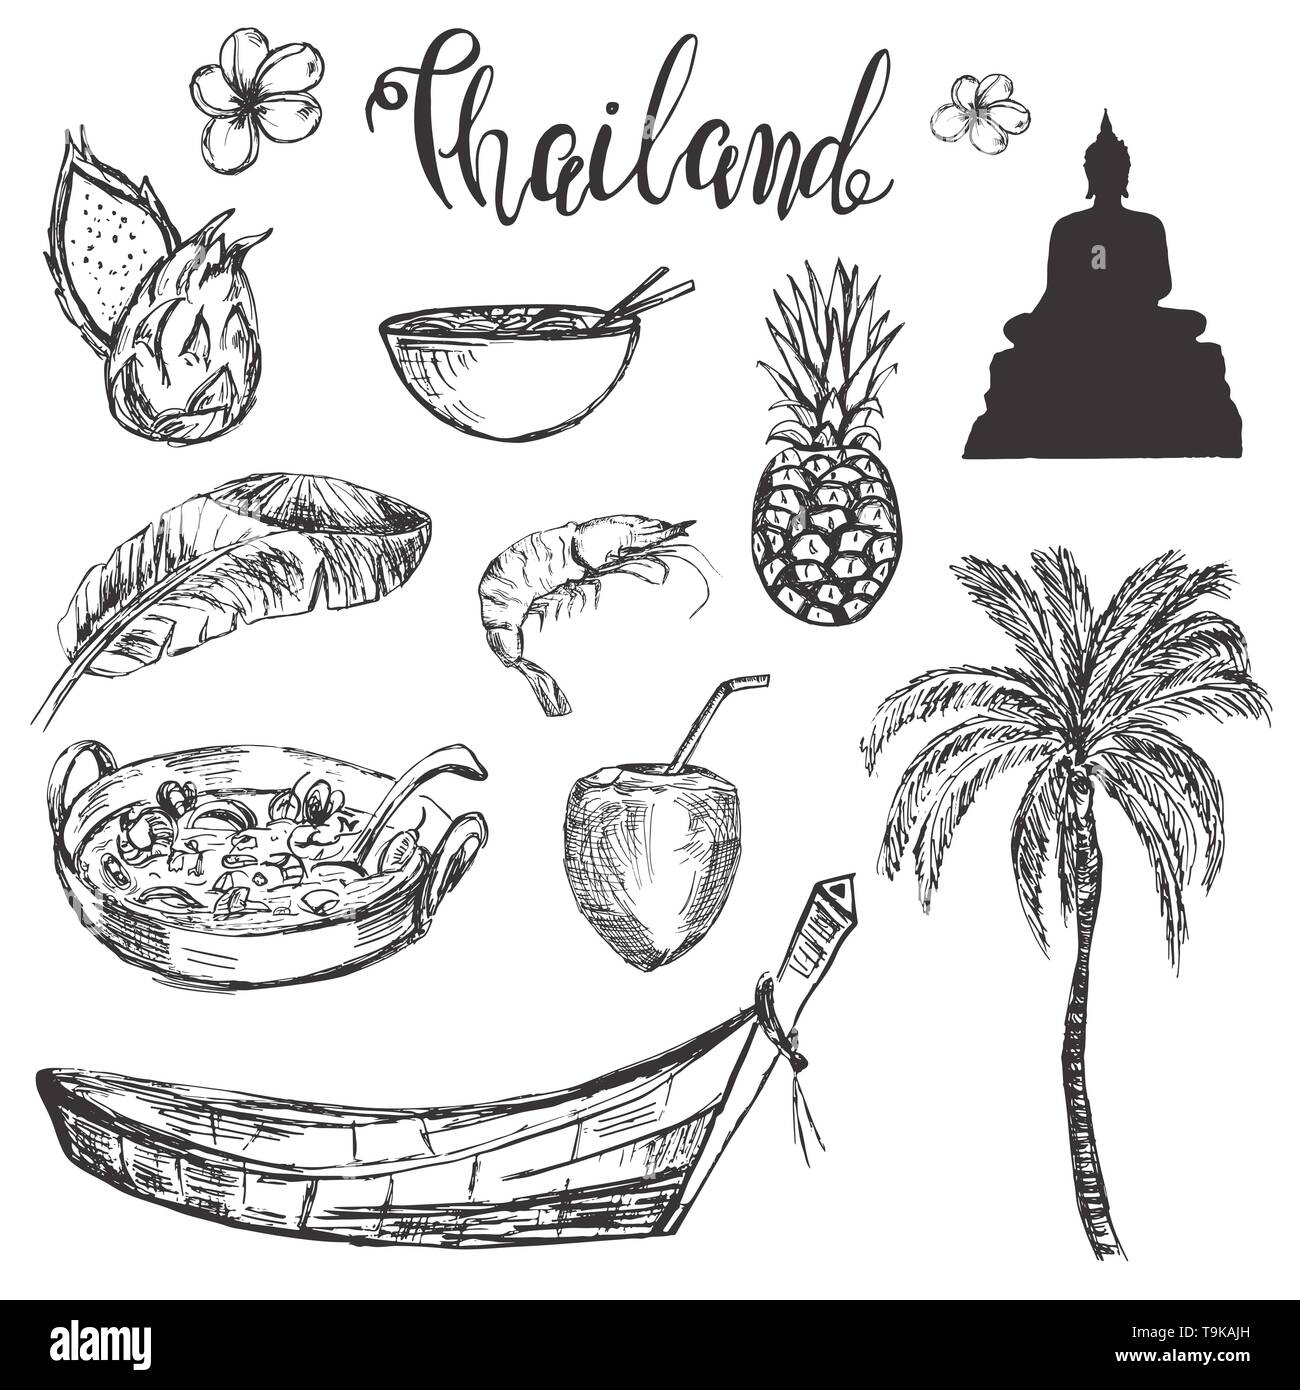 Disegnata a mano con set disegnati a mano Thailandia accosiated simboli Illustrazione Vettoriale